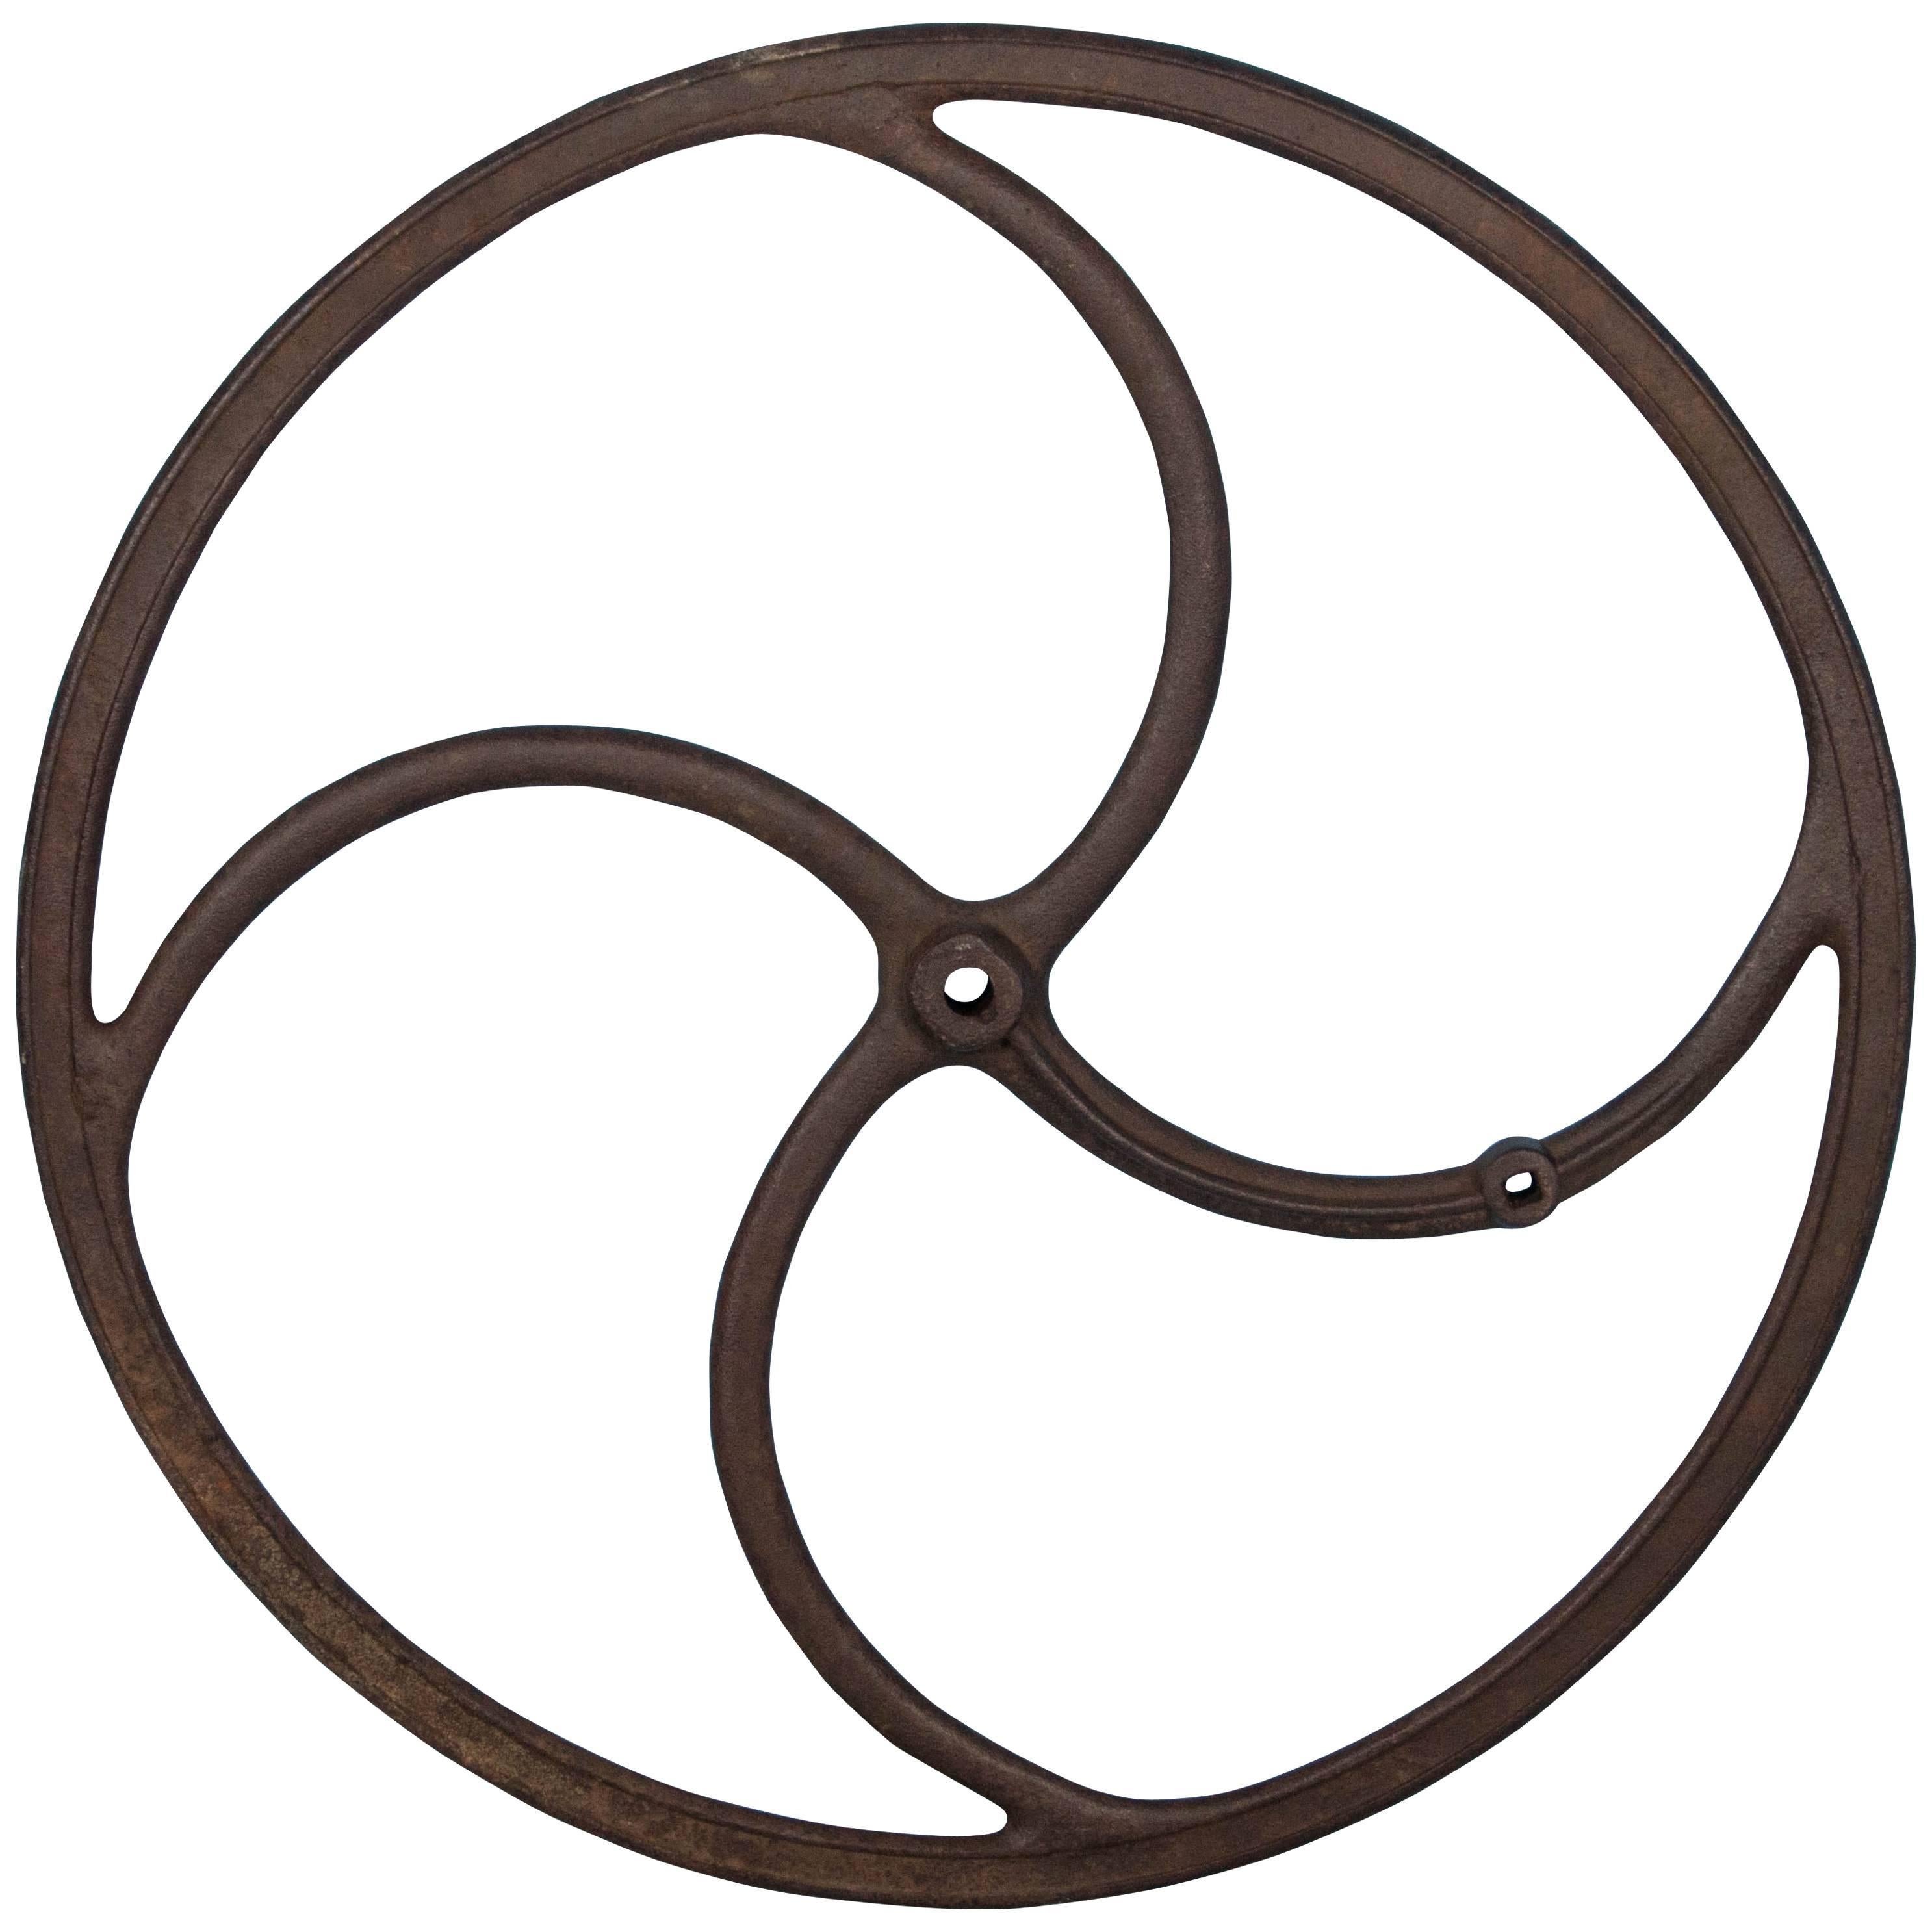 Antique Industrial Cast Iron Wheel